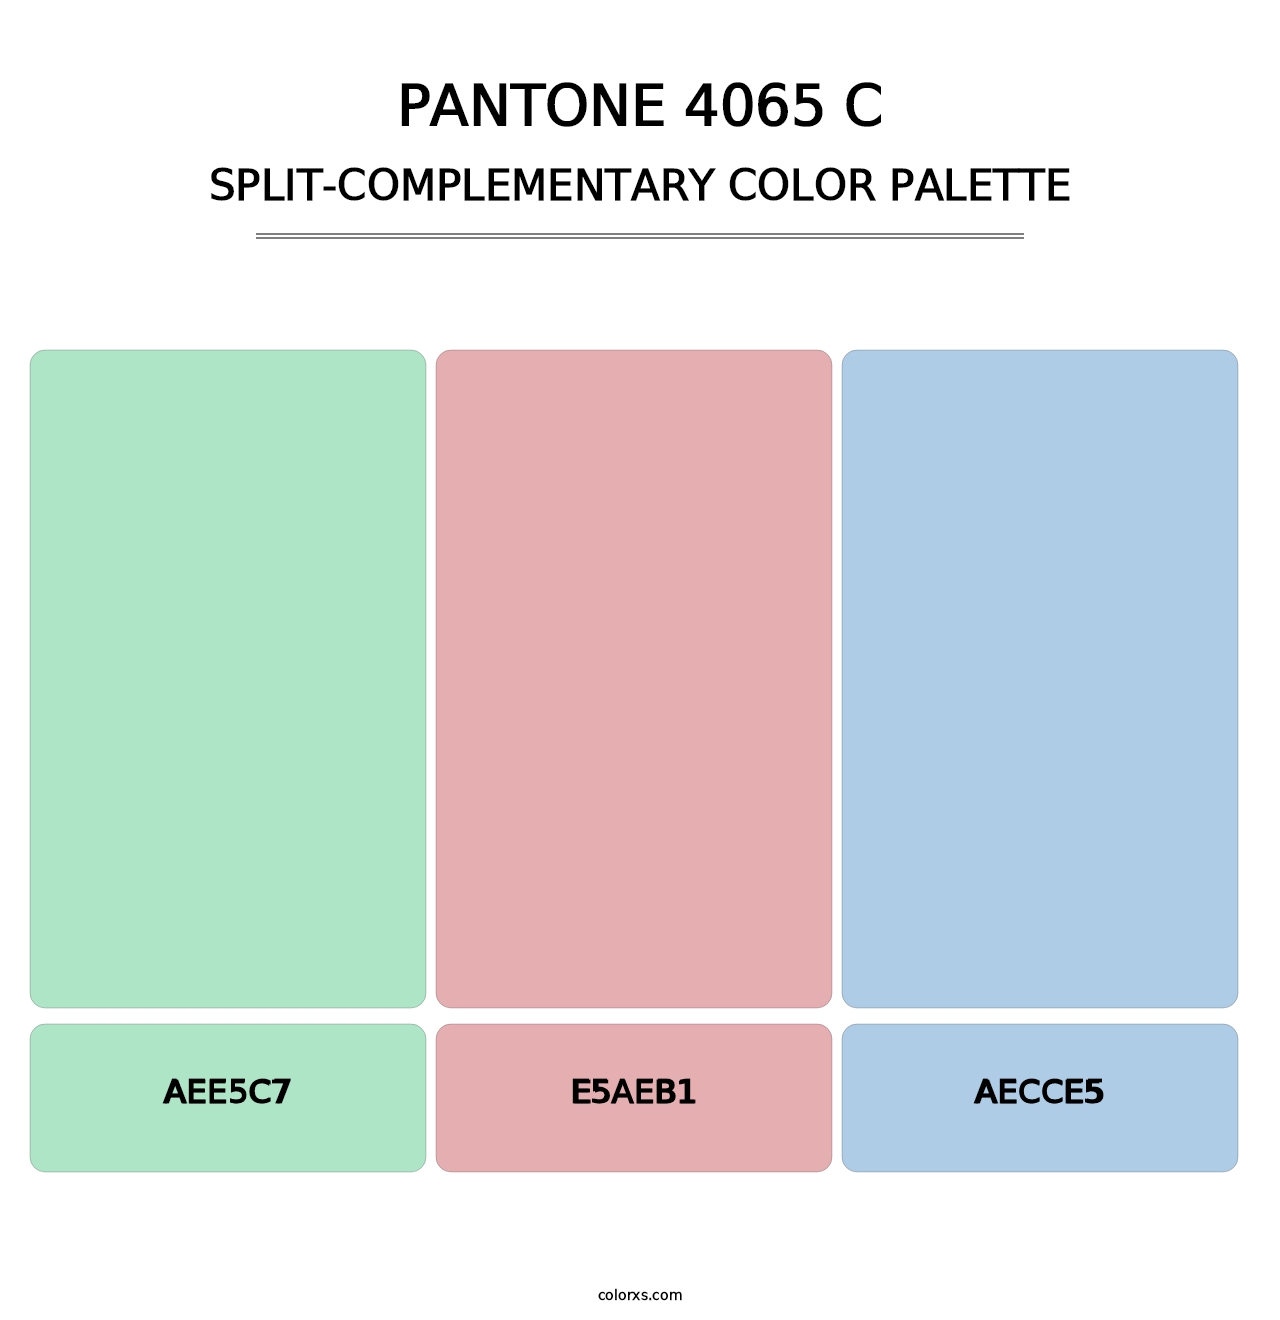 PANTONE 4065 C - Split-Complementary Color Palette